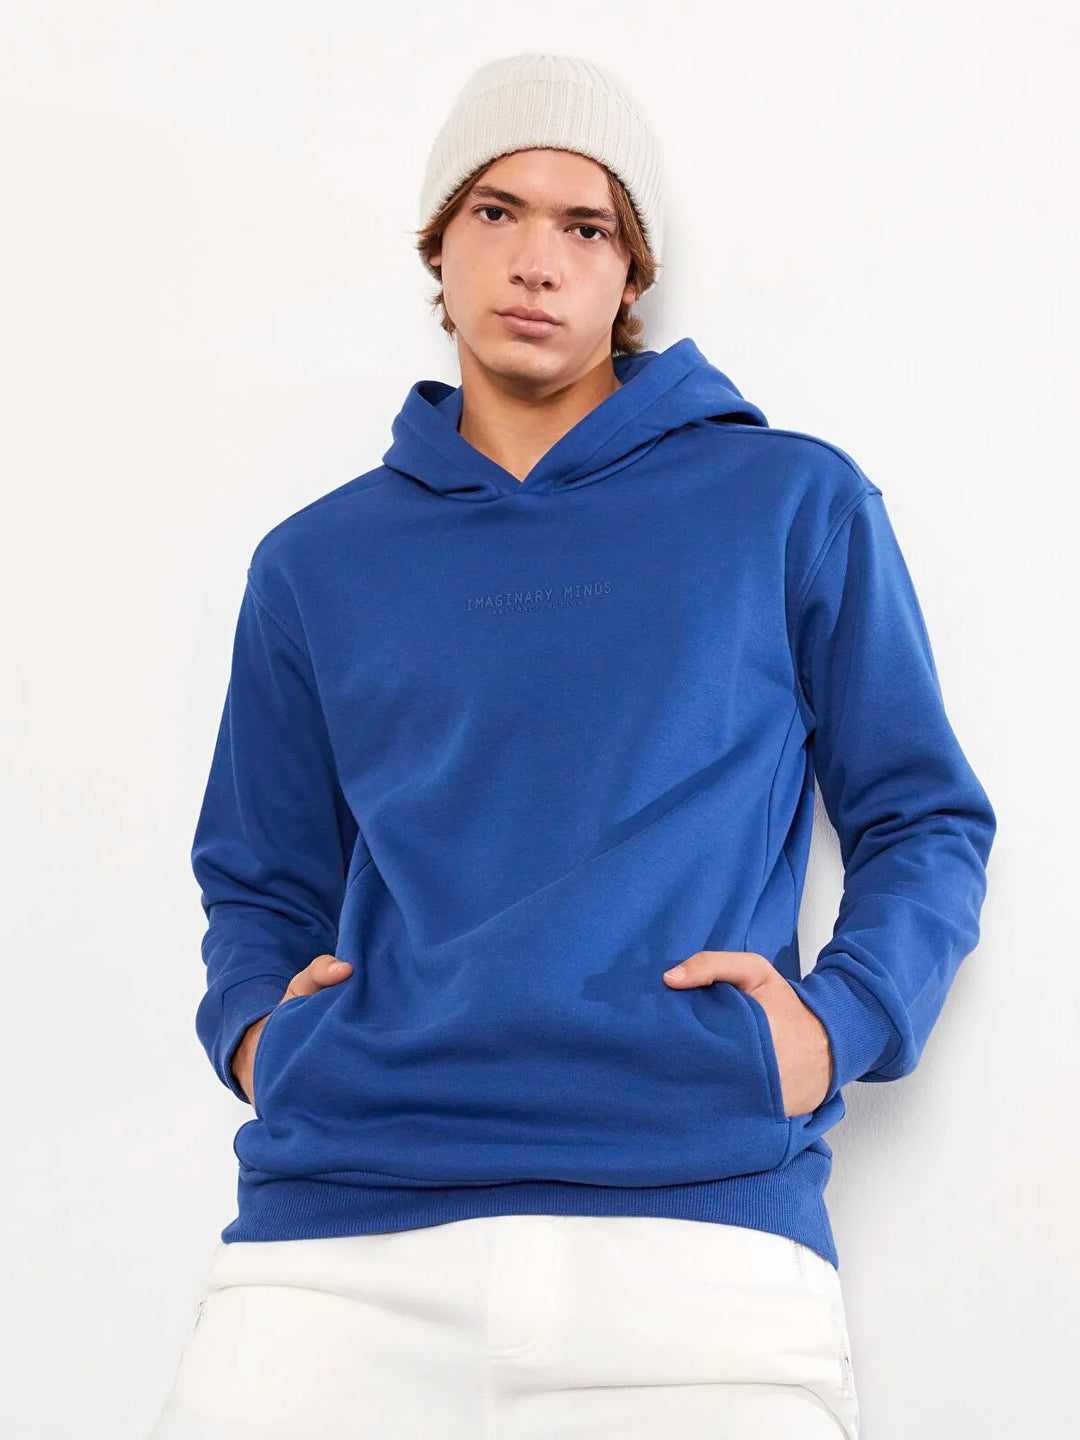 Hoodie Long Sleeve Printed Men Sweatshirt